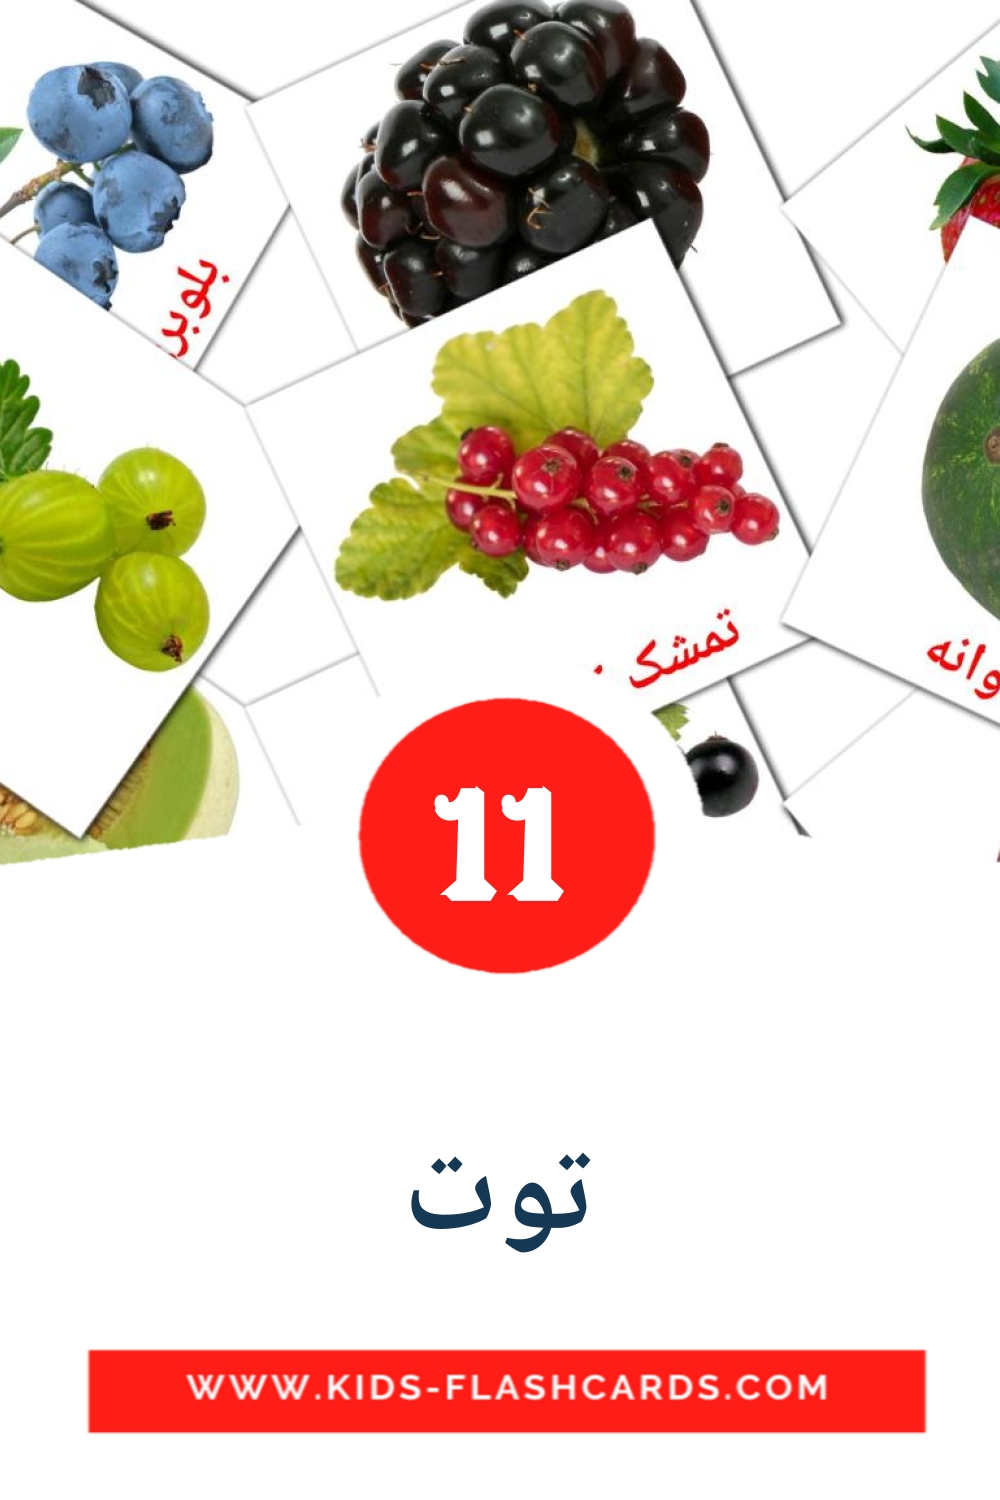 11 carte illustrate di توت per la scuola materna in persiano